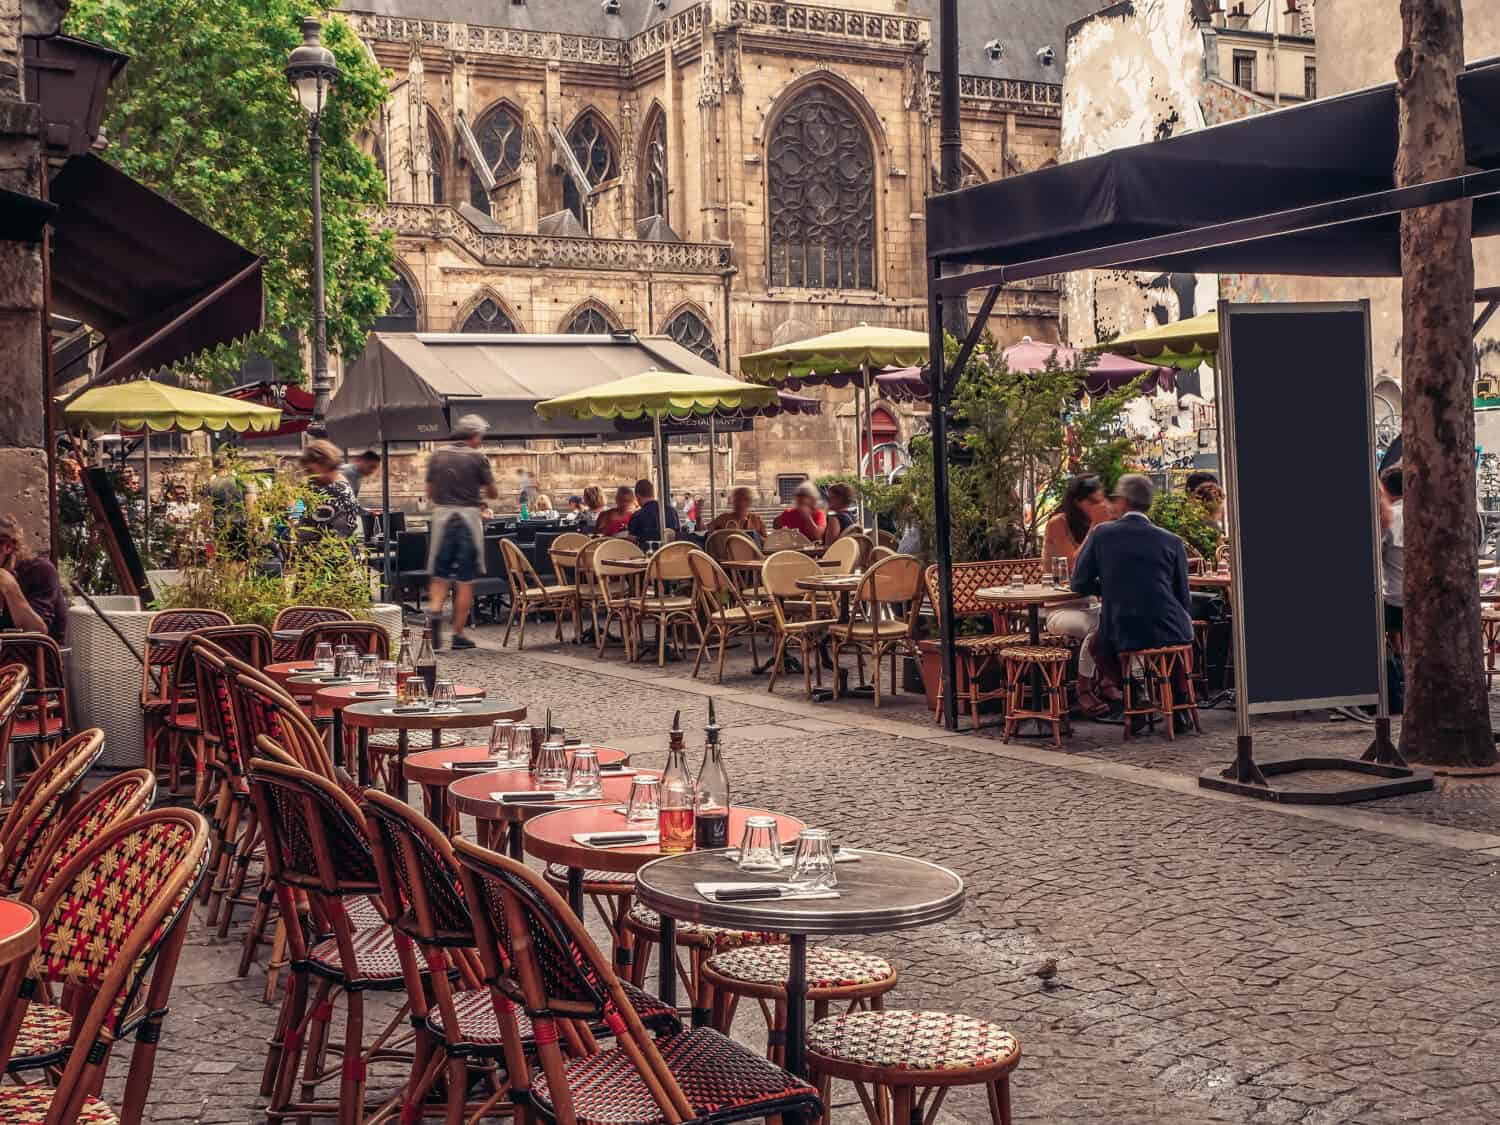 Strada accogliente con tavolini di un bar a Parigi, Francia.  Architettura e monumenti di Parigi.  Cartolina di Parigi